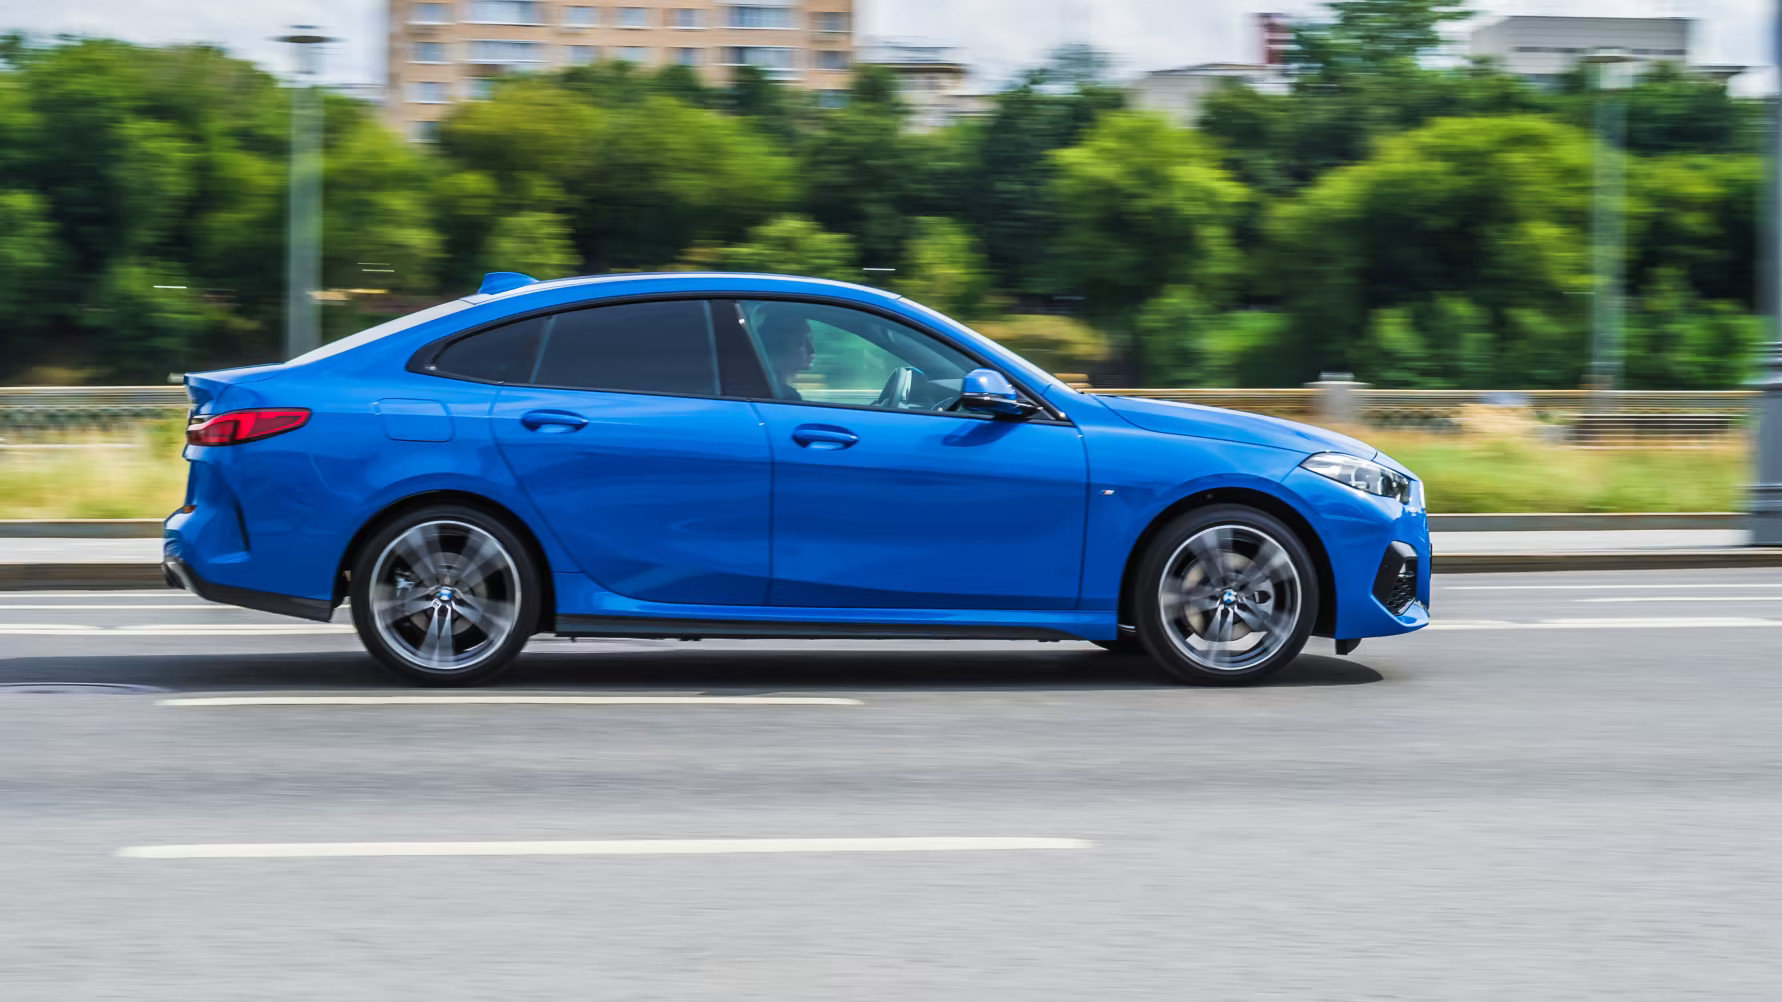 BMW-förare sämst på att hålla fartgränserna enligt kvdbils undersökning i samarbete med Kantar Sifo.